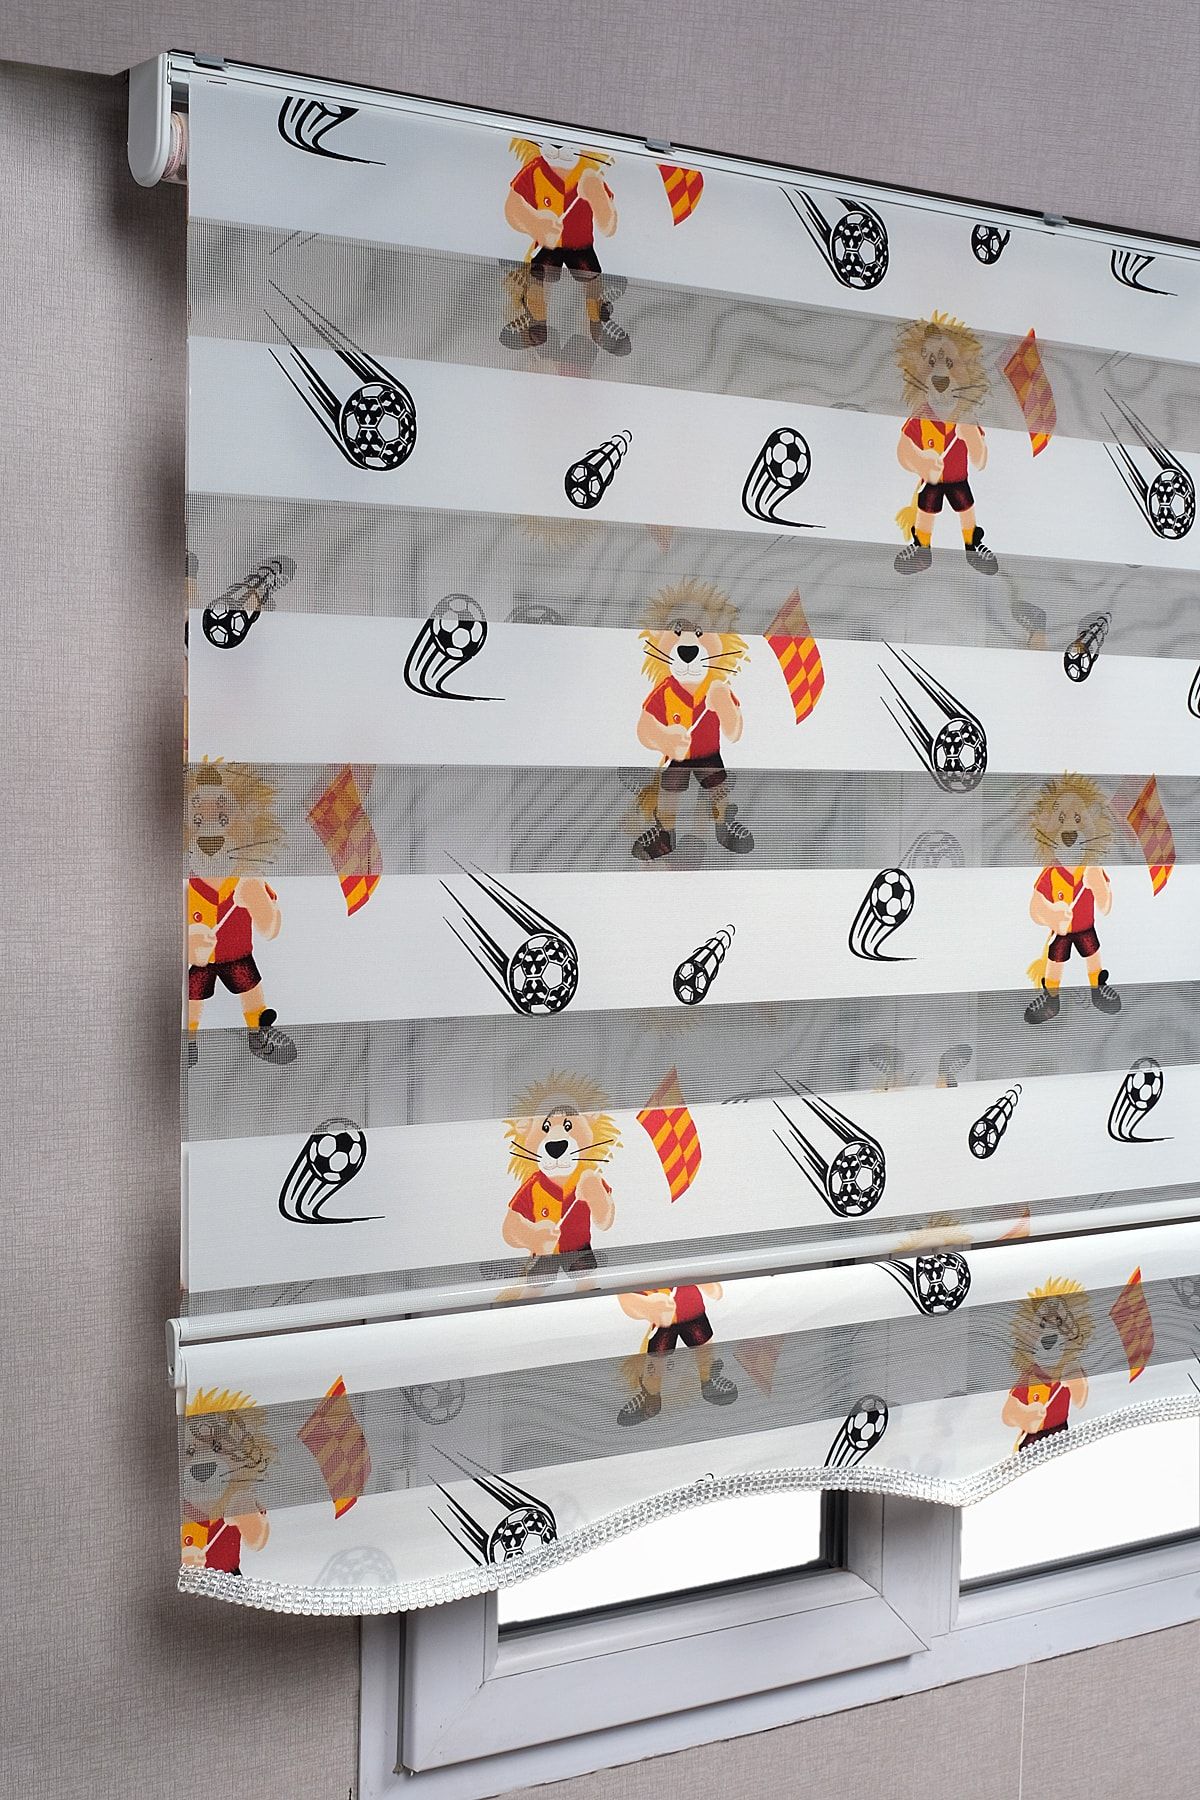 bizdenperde Etekli Galatasaray Taraftar Aslan Desenli Genç Odası Zebra Stor Güneşlik Perdeler